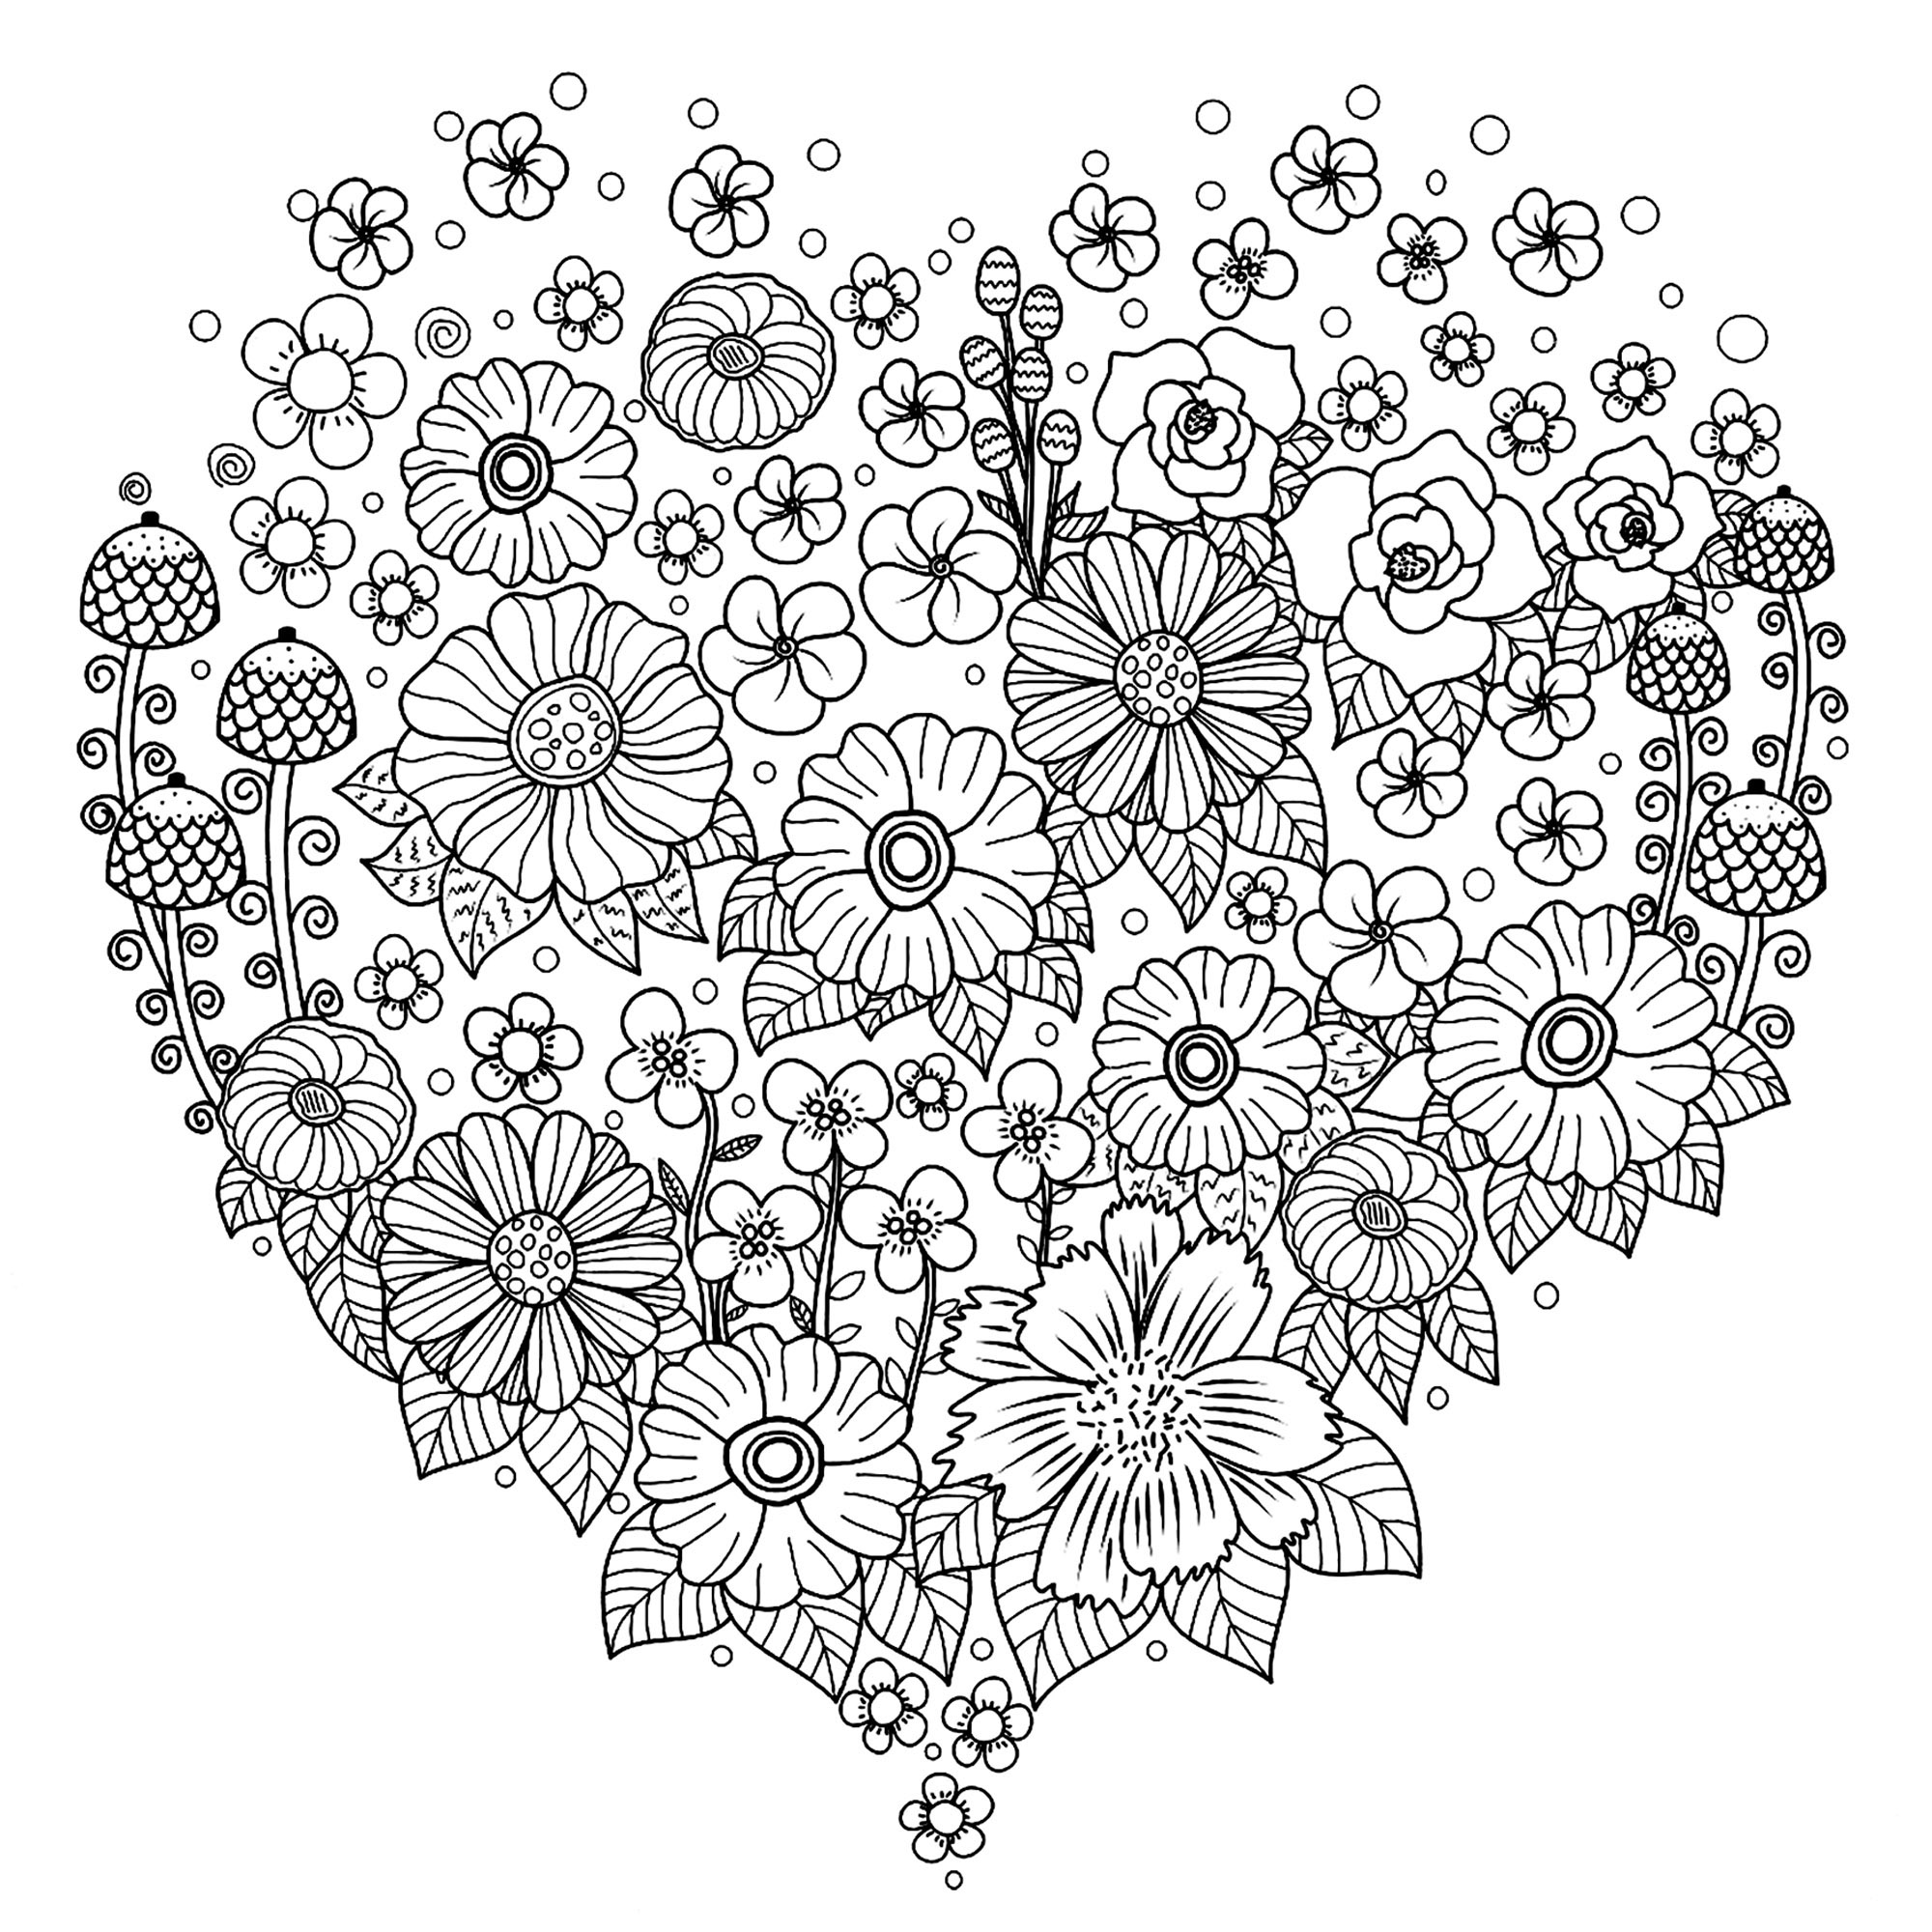 Coloriez ces nombreuses fleurs dans ce joli coeur. Un coloriage parfait pour être offert à celle(s), celui ou ceux que vous aimez !, Artiste : Nitiya Chuahmon   Source : 123rf